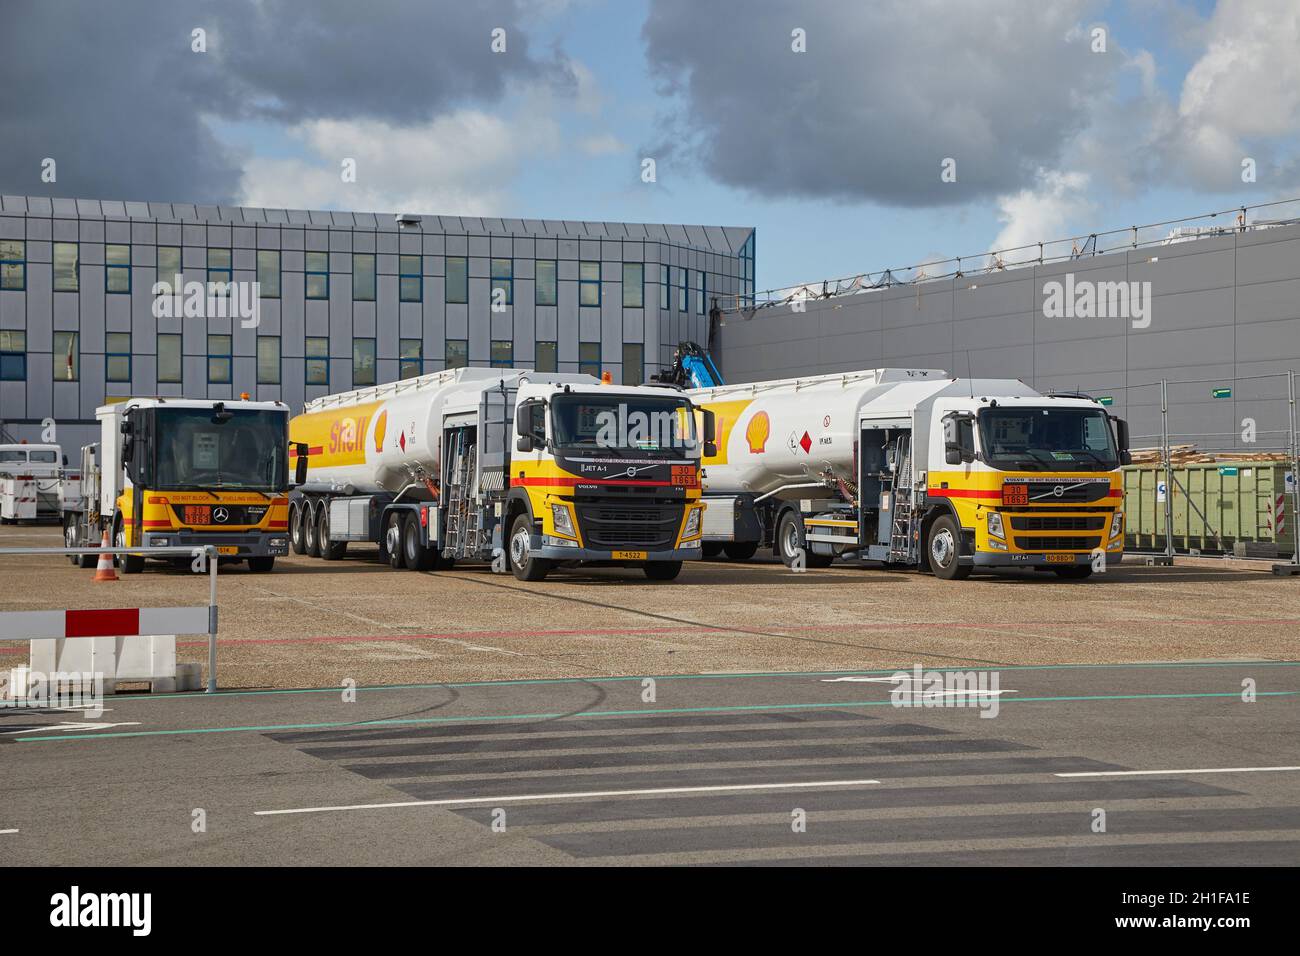 AÉROPORT DE ROTTERDAM, PAYS-BAS - VERS 2019 : gros camions à carburant garés à un aéroport, marque Shell.Le vol brûle de grandes quantités de combustibles fossiles, signe Banque D'Images